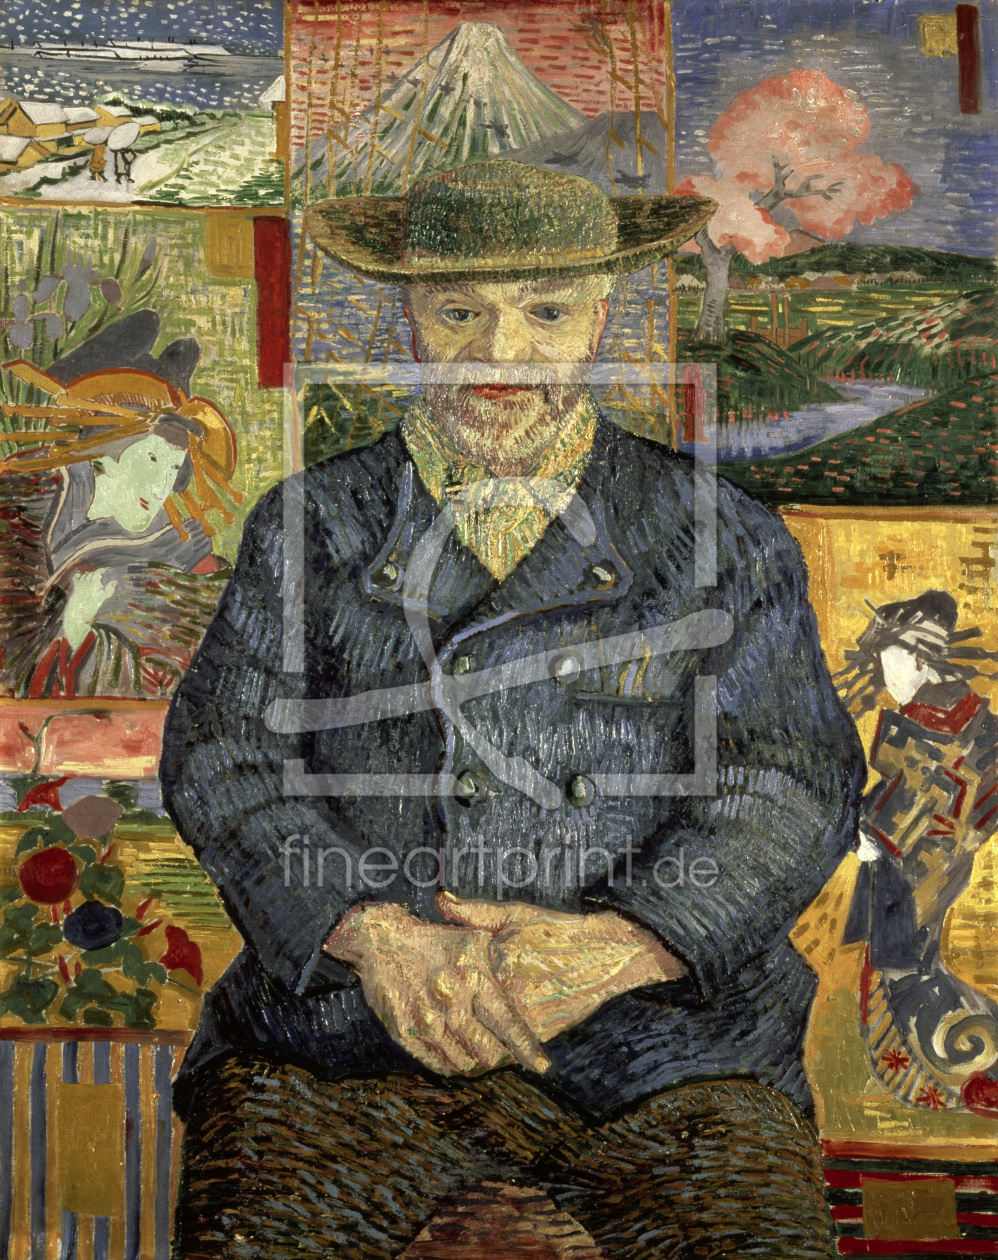 Bild-Nr.: 30003540 van Gogh /Portrait of Pere Tanguy /1887 erstellt von van Gogh, Vincent